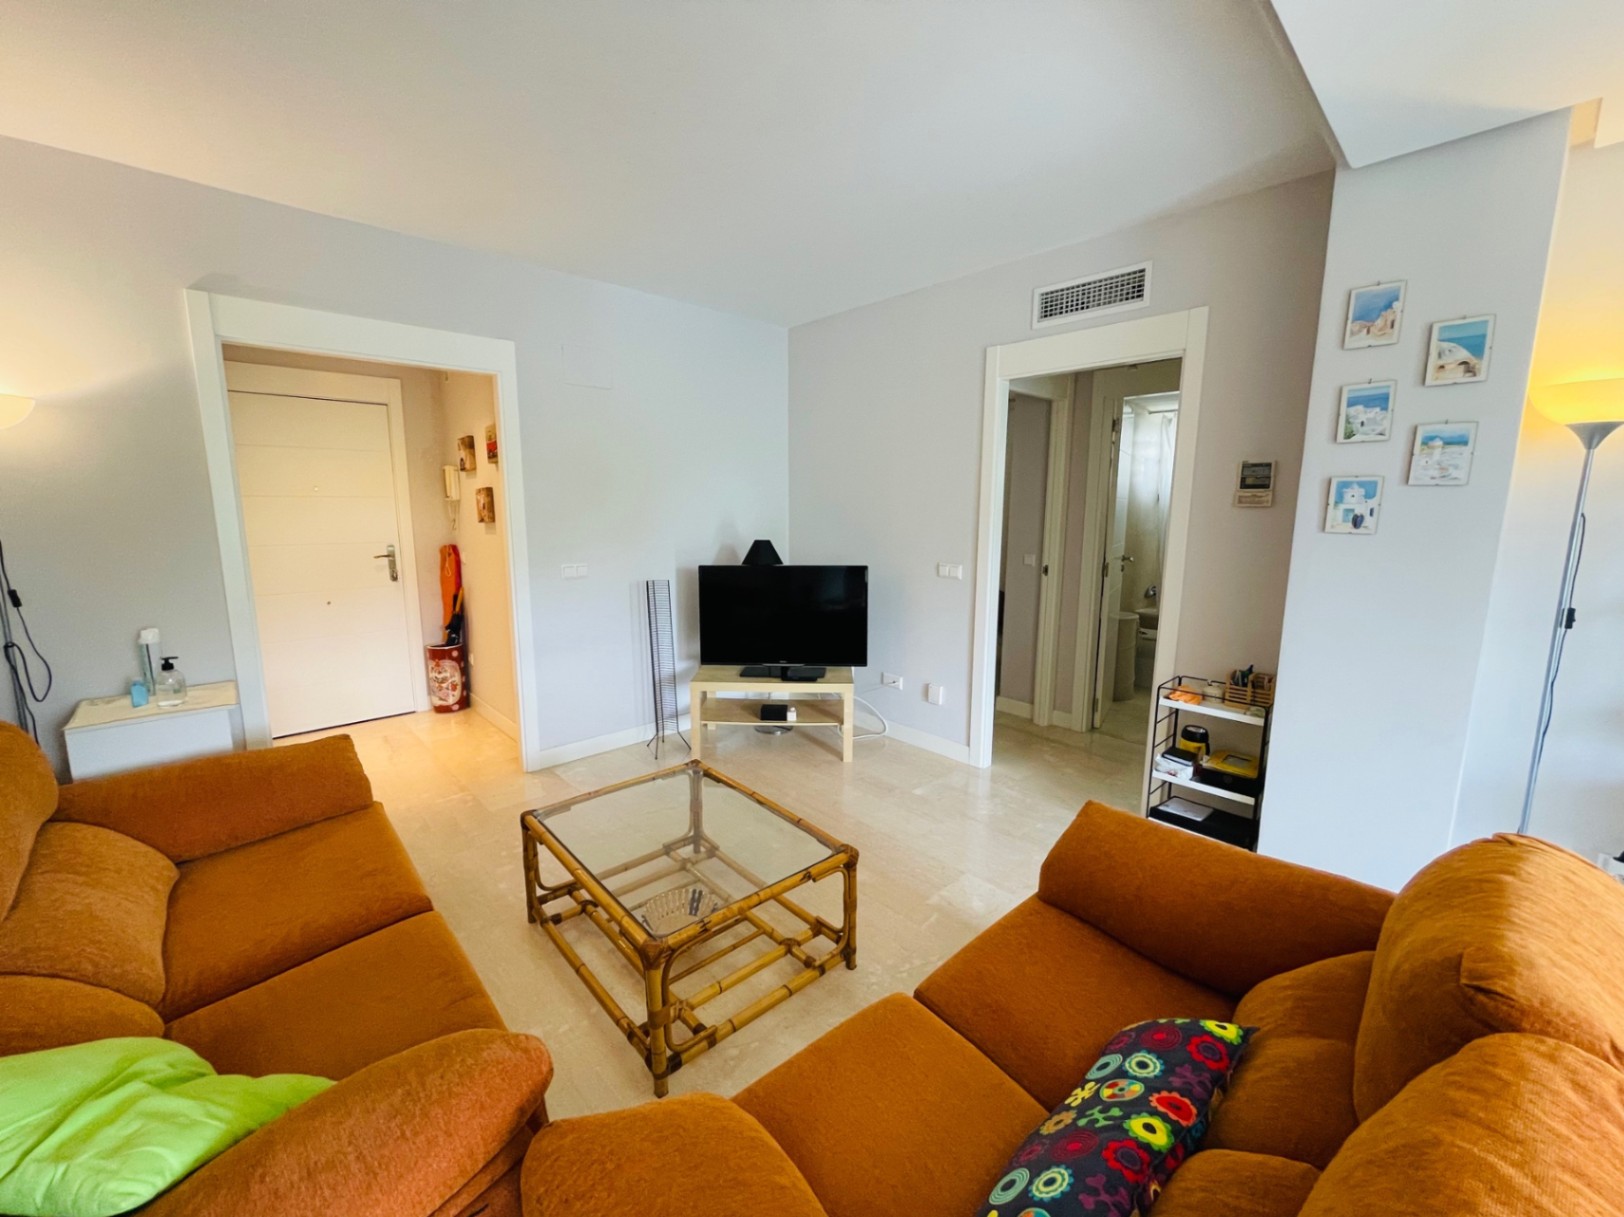 Apartment for sale in El Vergel beach